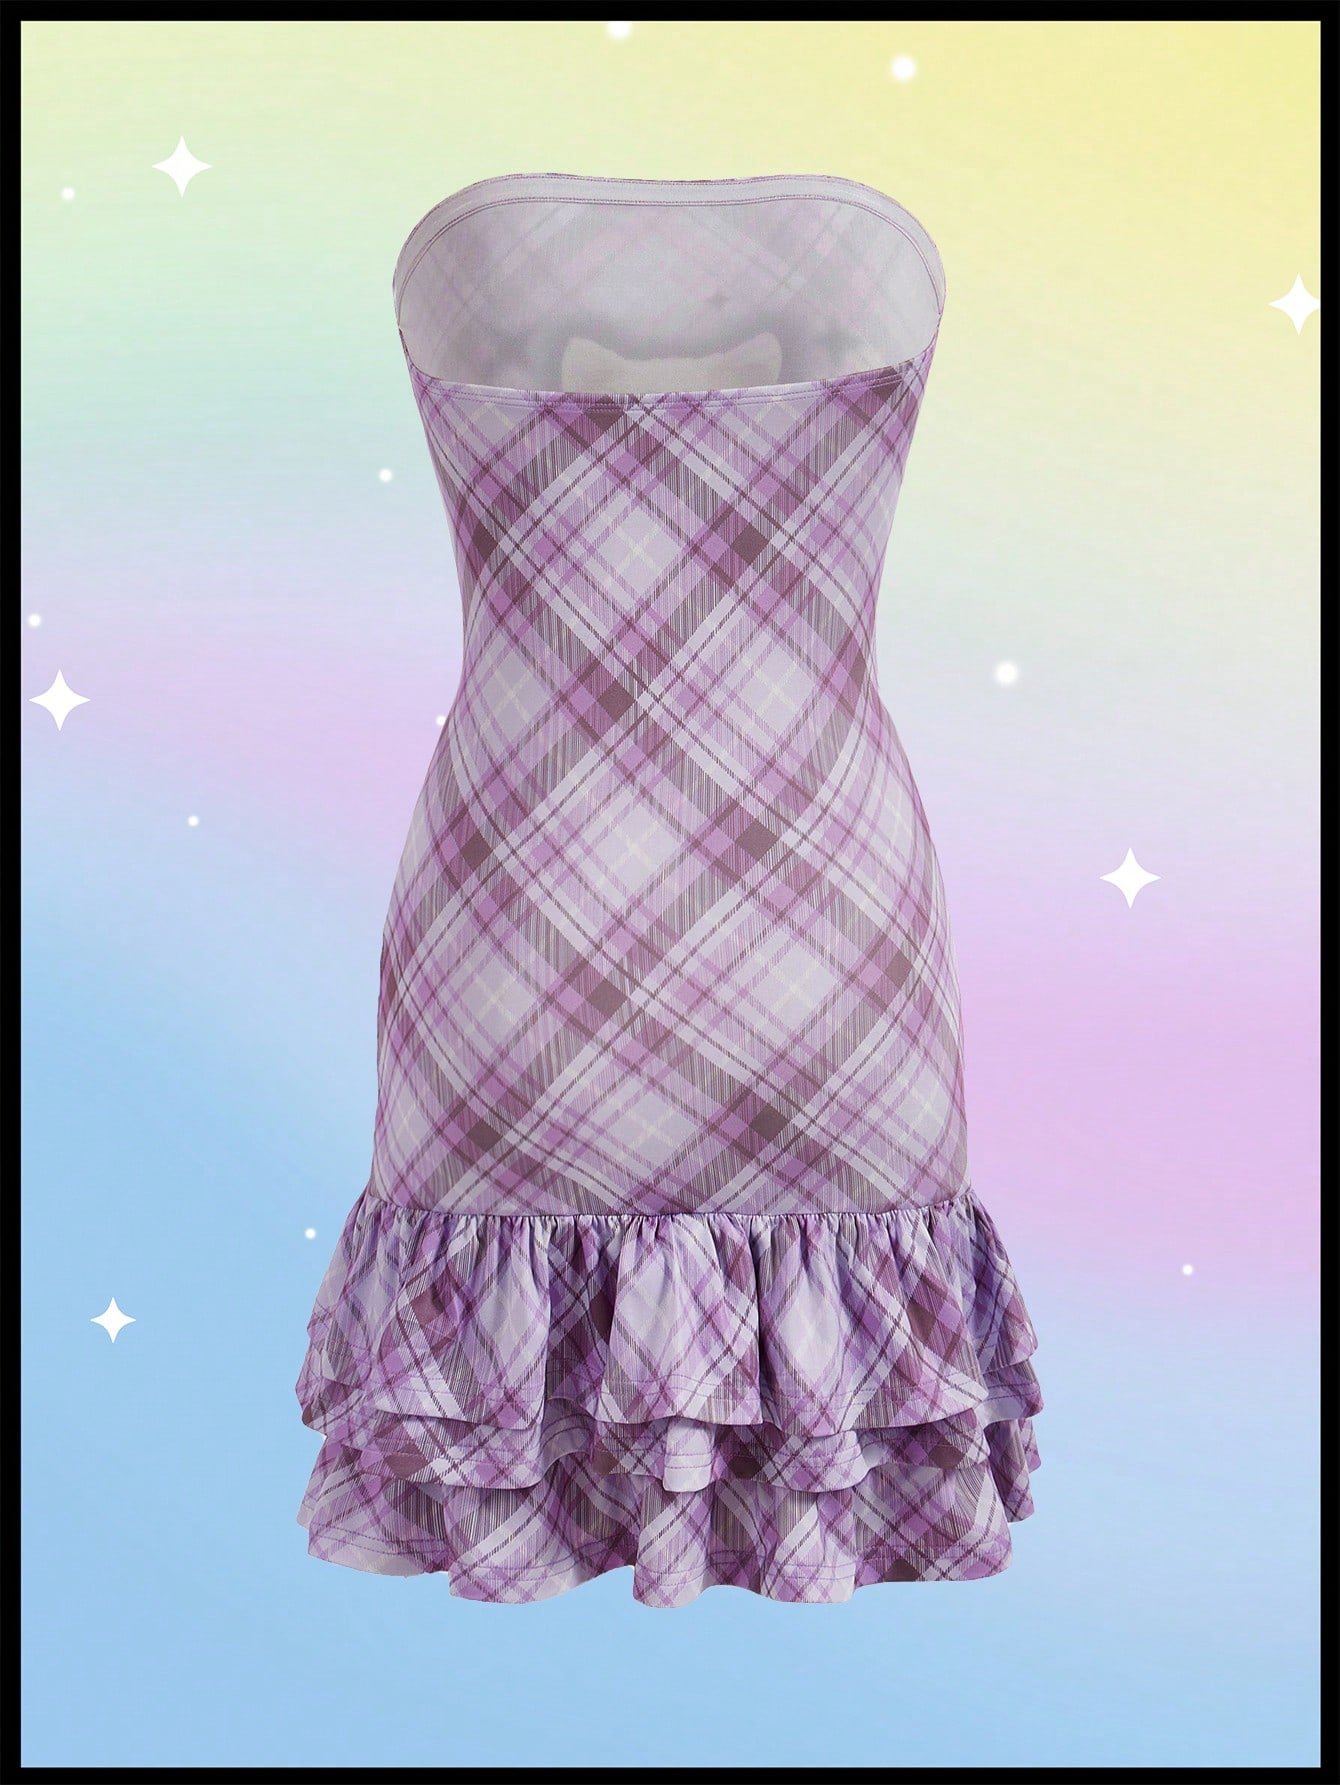 キュートな子供っぽいデザインのチューブトップ ドーパミンキャット タイトなウーマンズドレス